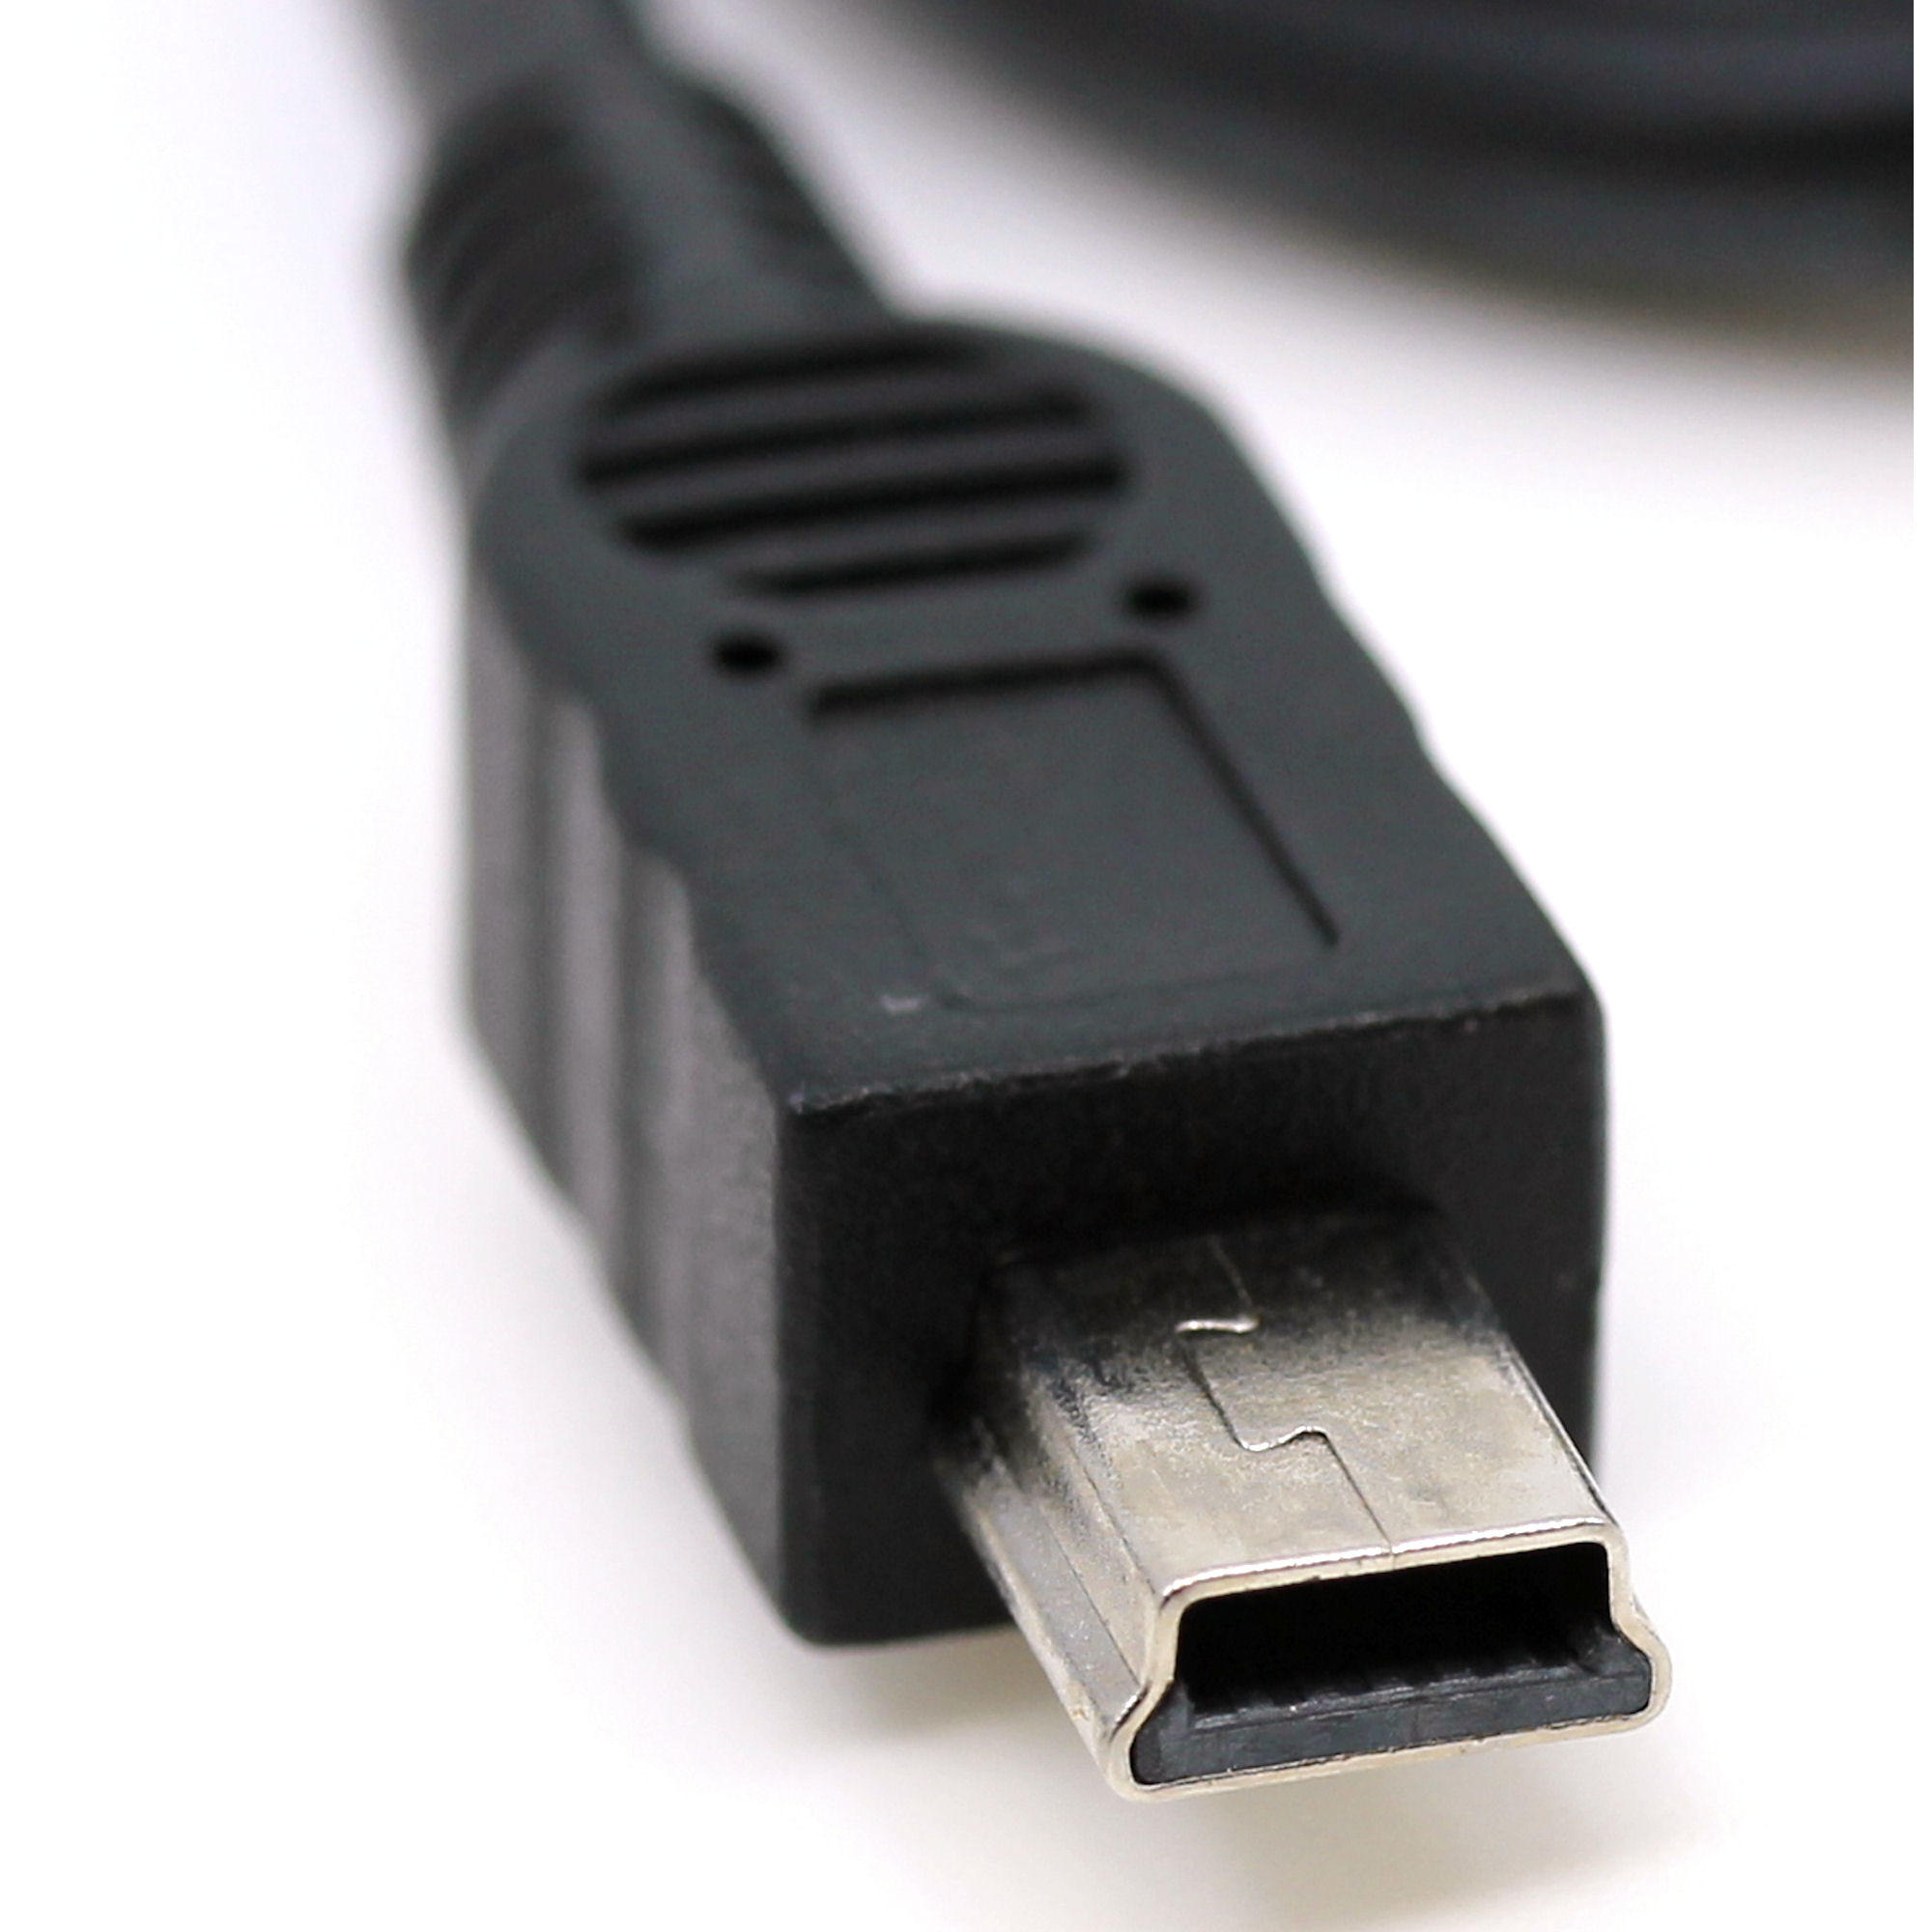 USB Datenkabel für Falk N30, N40, N50, N80, N100, N120, N150, N200, N220L, N240L, P250, P300, P320